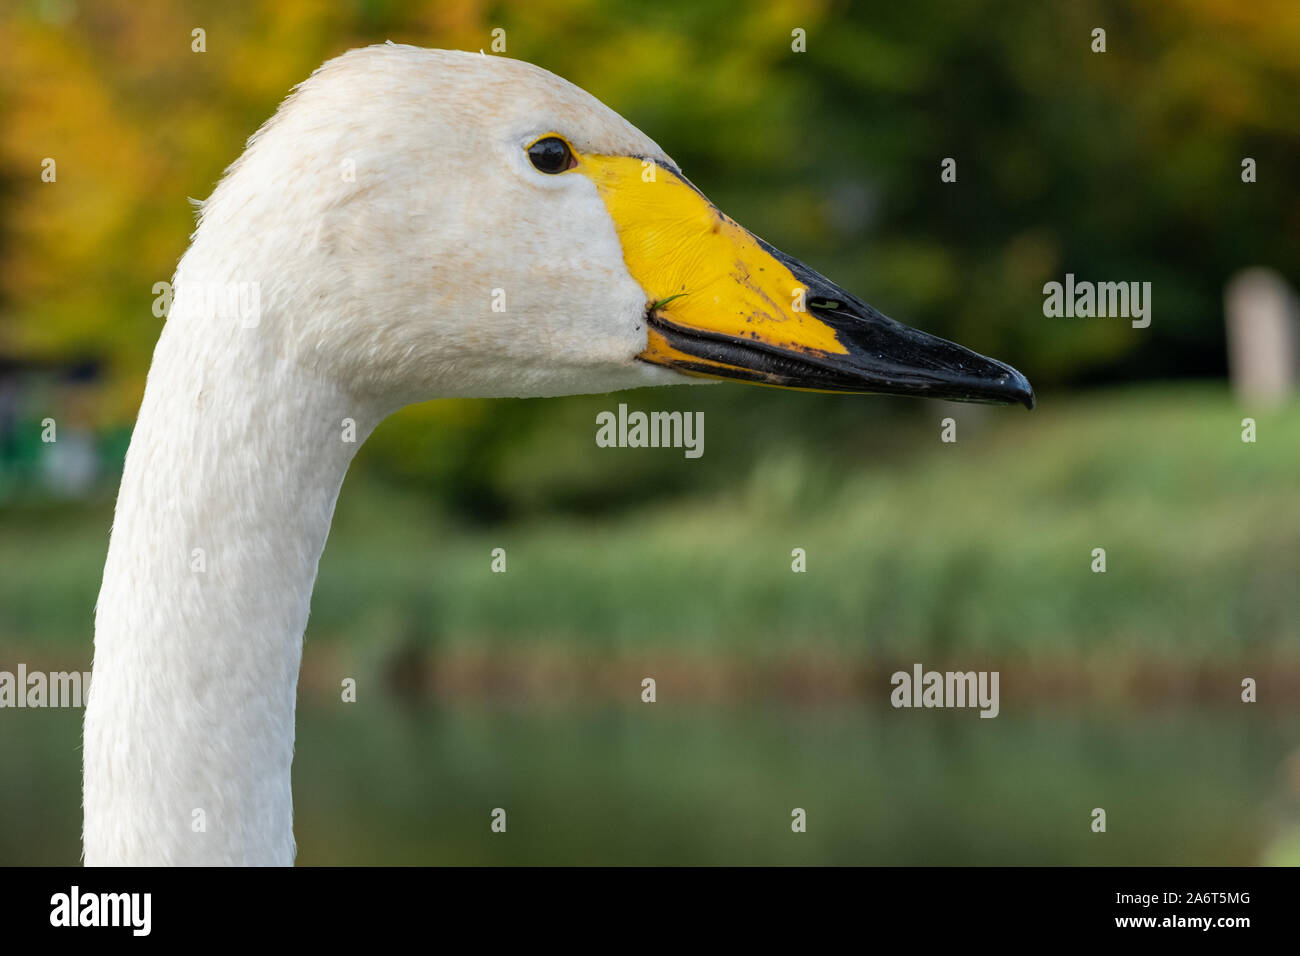 Cabeza y cuello de cisnes cantores, con pico amarillo y negro y plumaje blanco Foto de stock